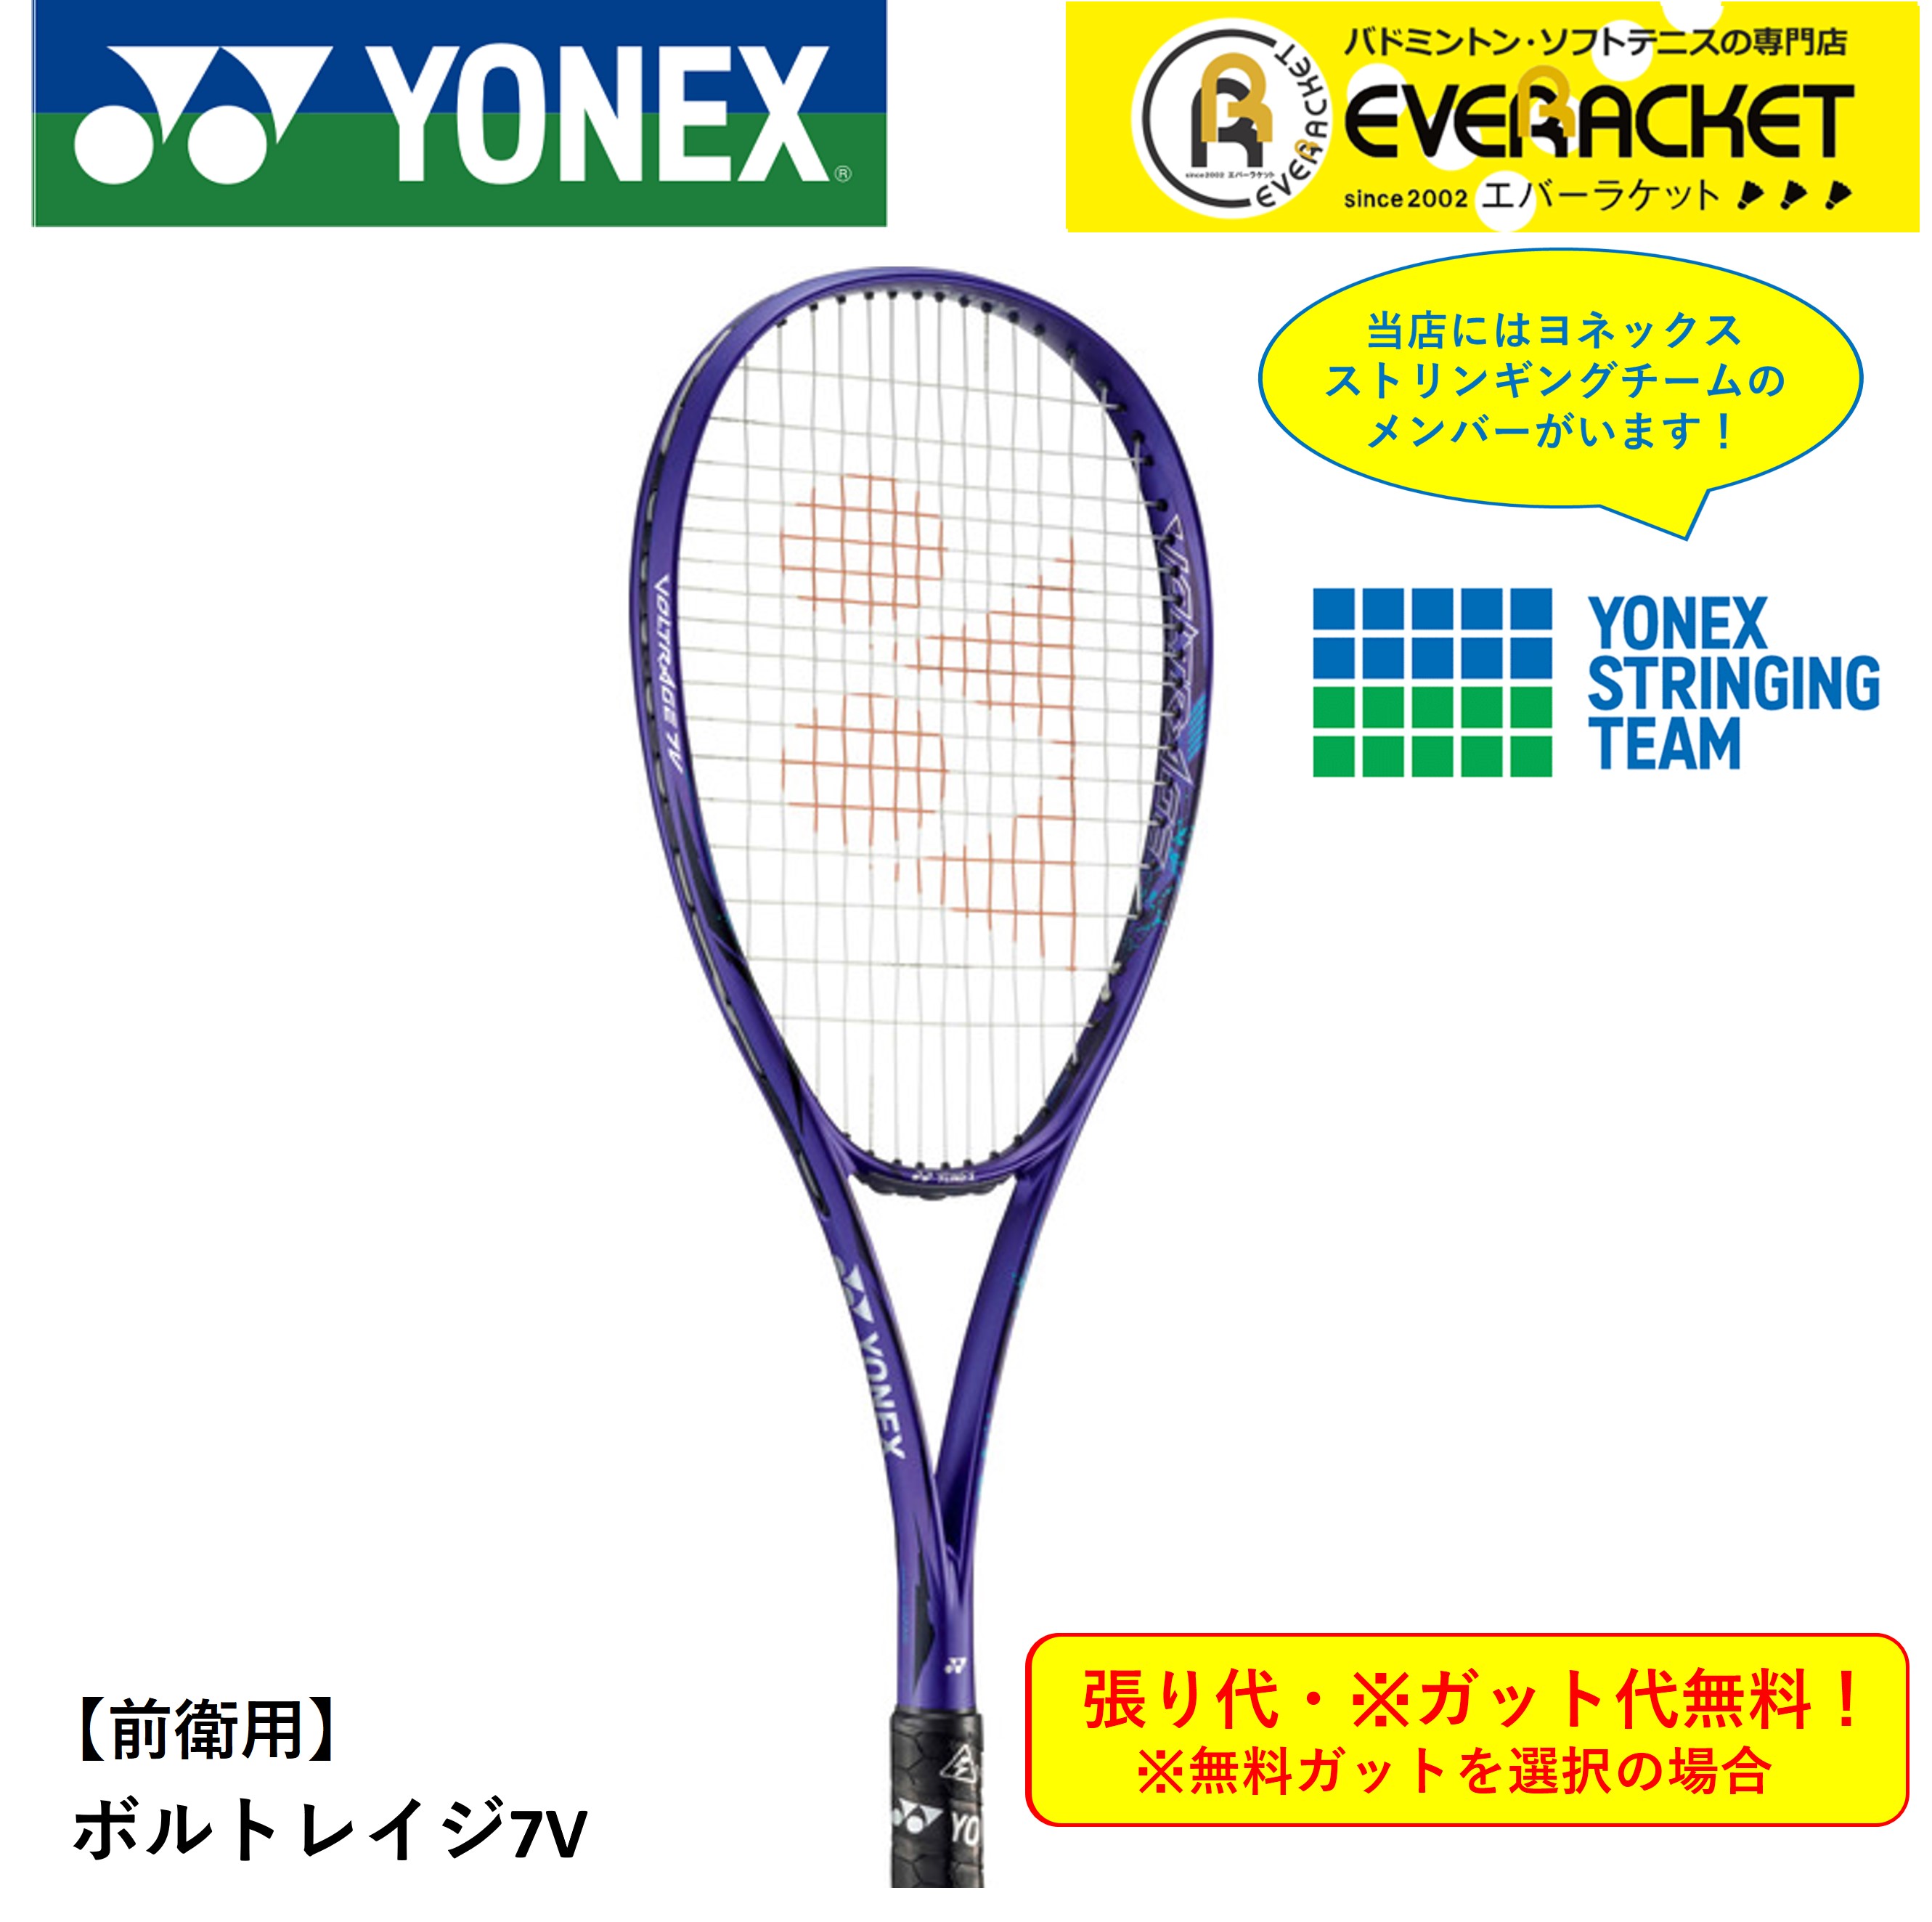 【最短出荷】【ガット代・張り代無料】【前衛用】 YONEX ヨネックス  ソフトテニスラケット ボルトレイジ7V VR7V